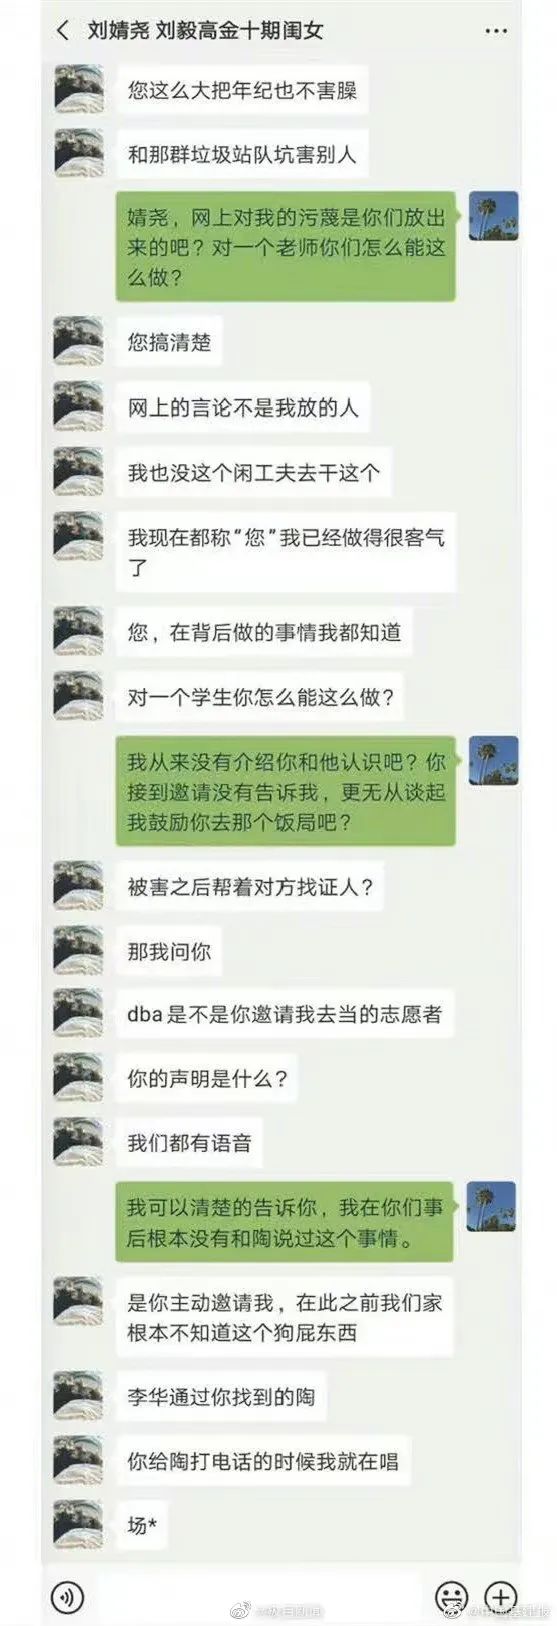 都翻脸了 刘强东案女主与父亲老师聊天记录流出